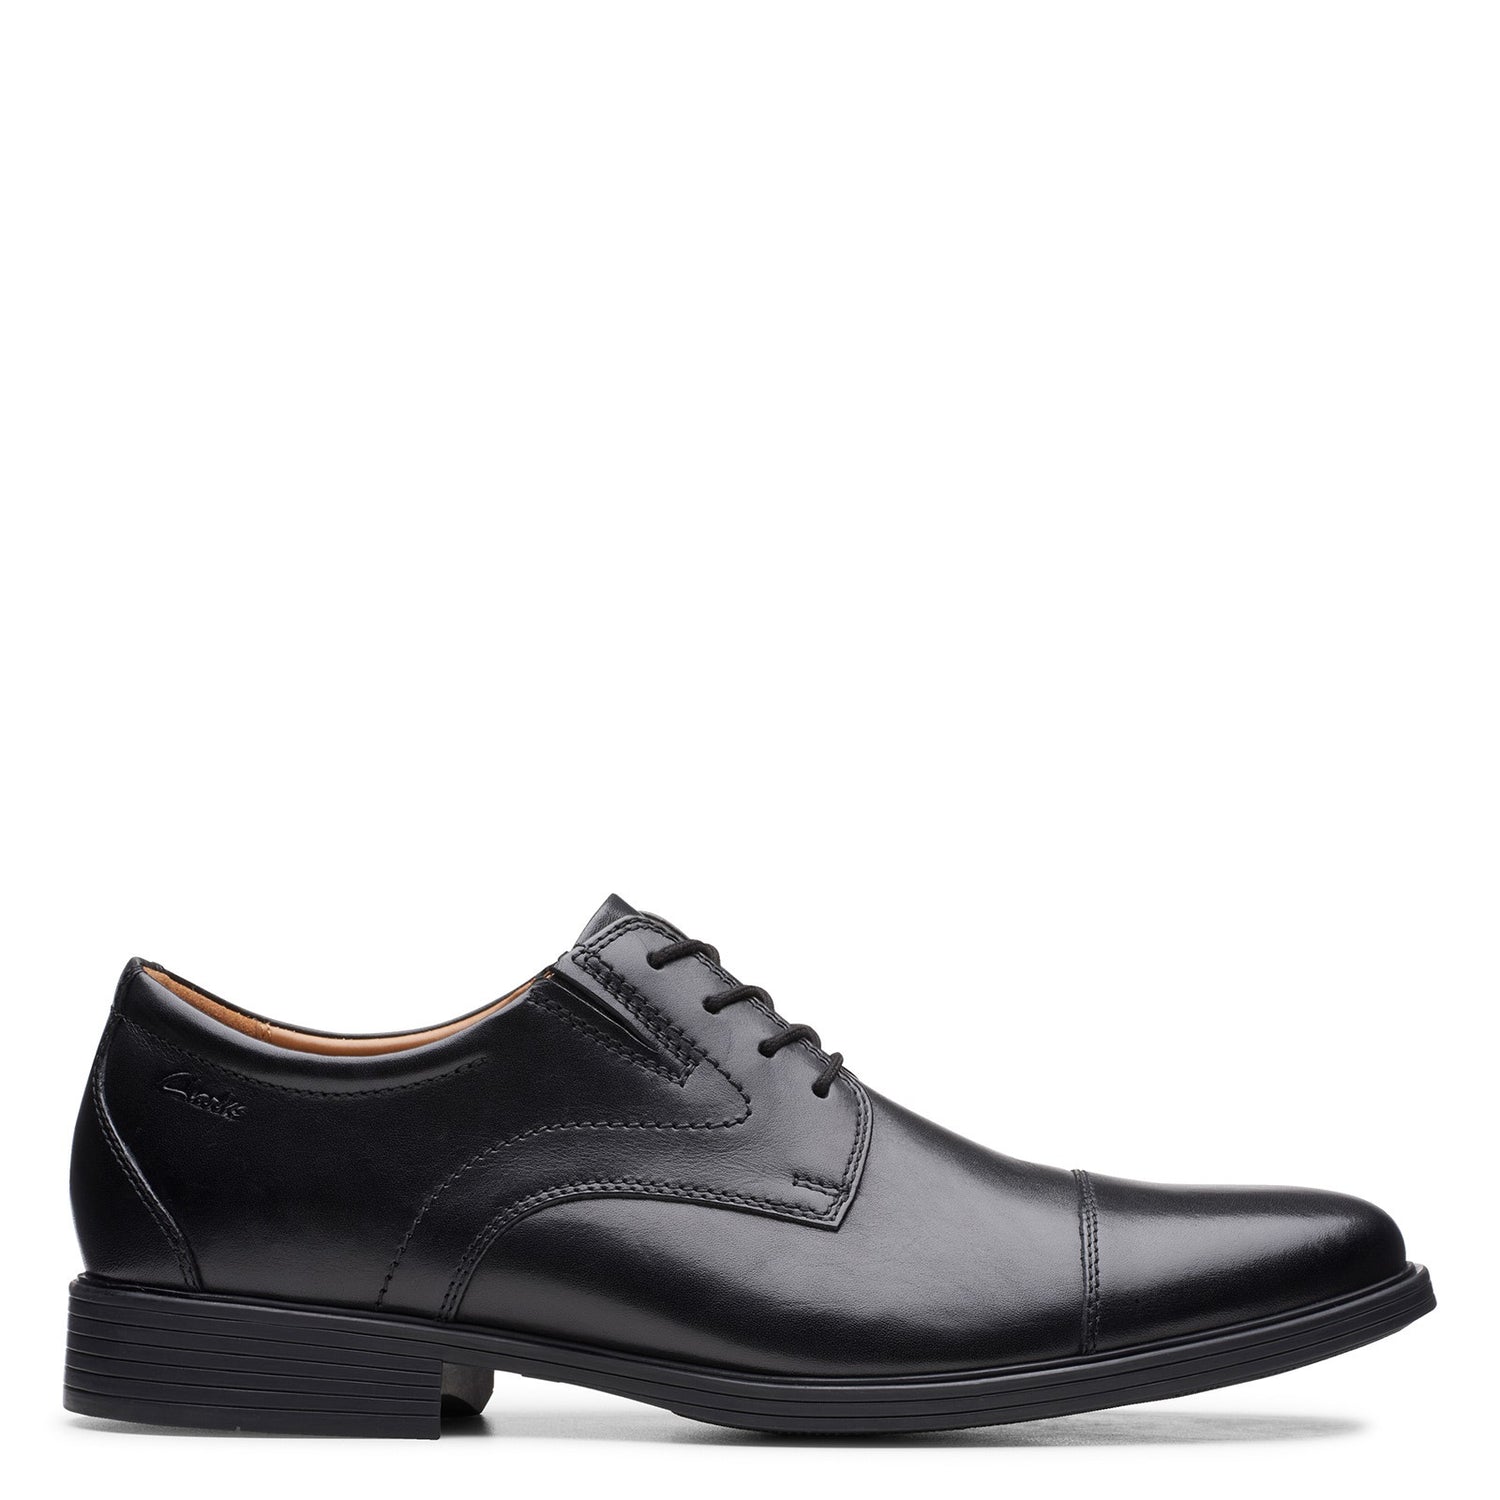 Peltz Shoes  Men's Clarks Whiddon Cap Toe Oxford BLACK 26152912